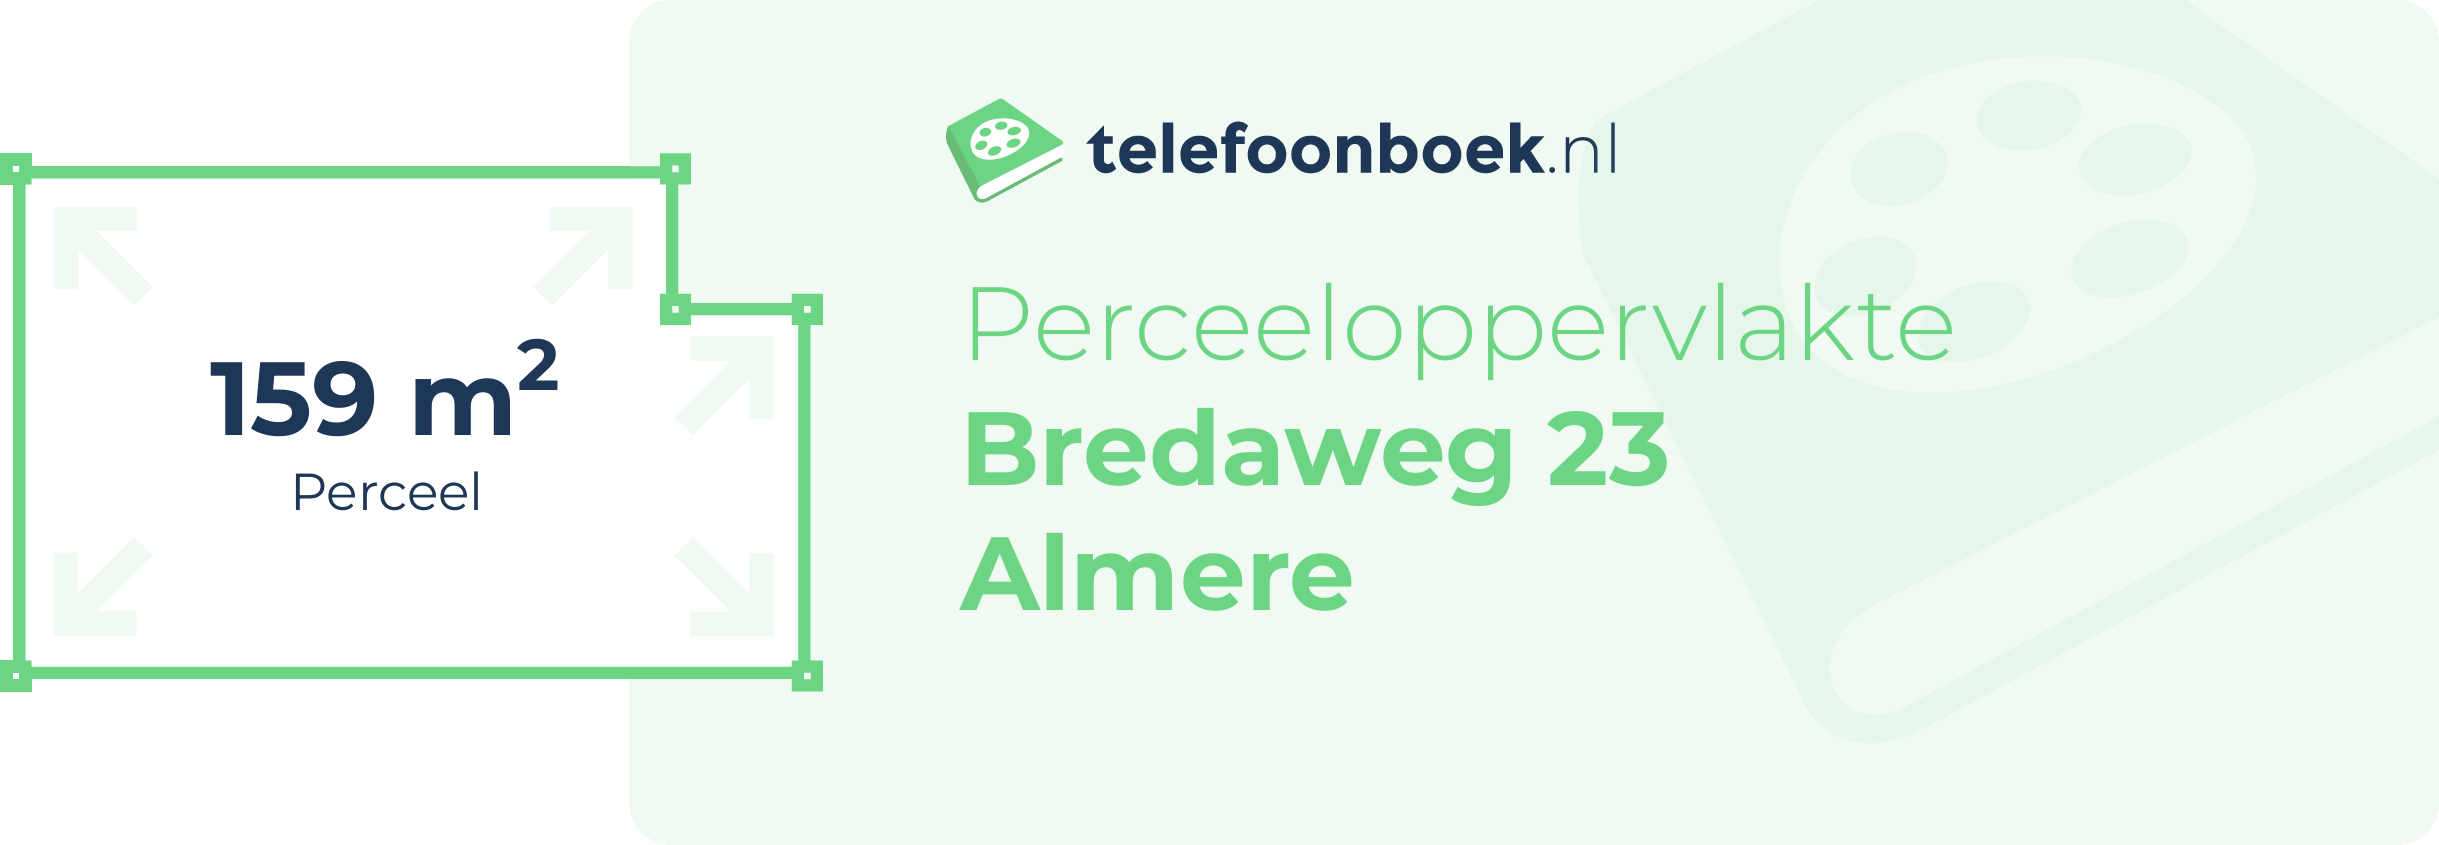 Perceeloppervlakte Bredaweg 23 Almere